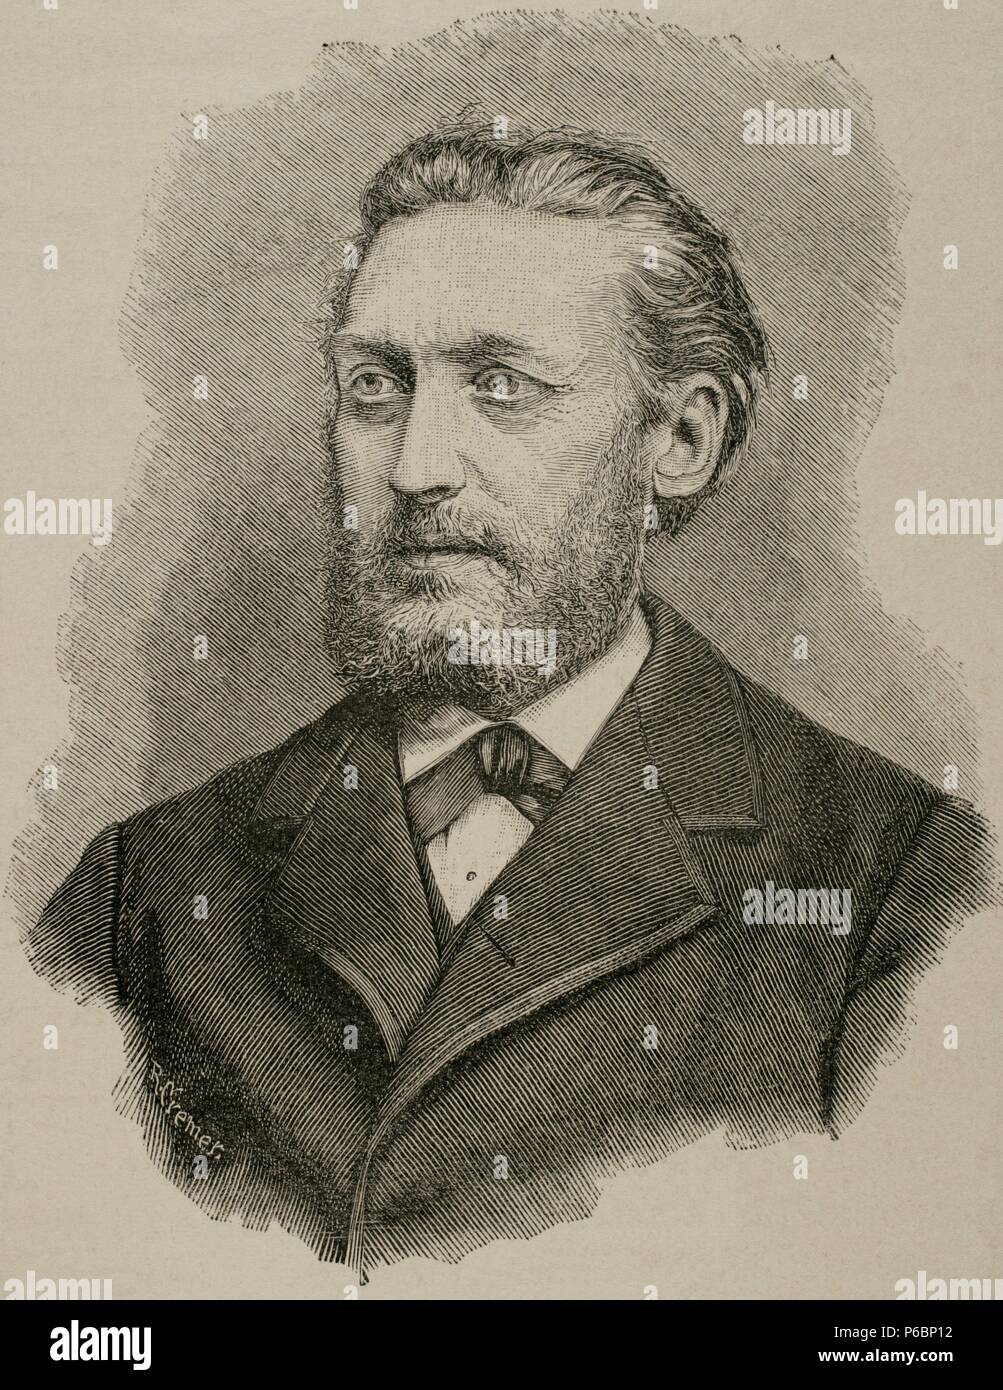 Wilhelm von Kardorff (1828-1907). Preußischer Politiker. Gravur. Die Universalgeschichte, 1885. Stockfoto